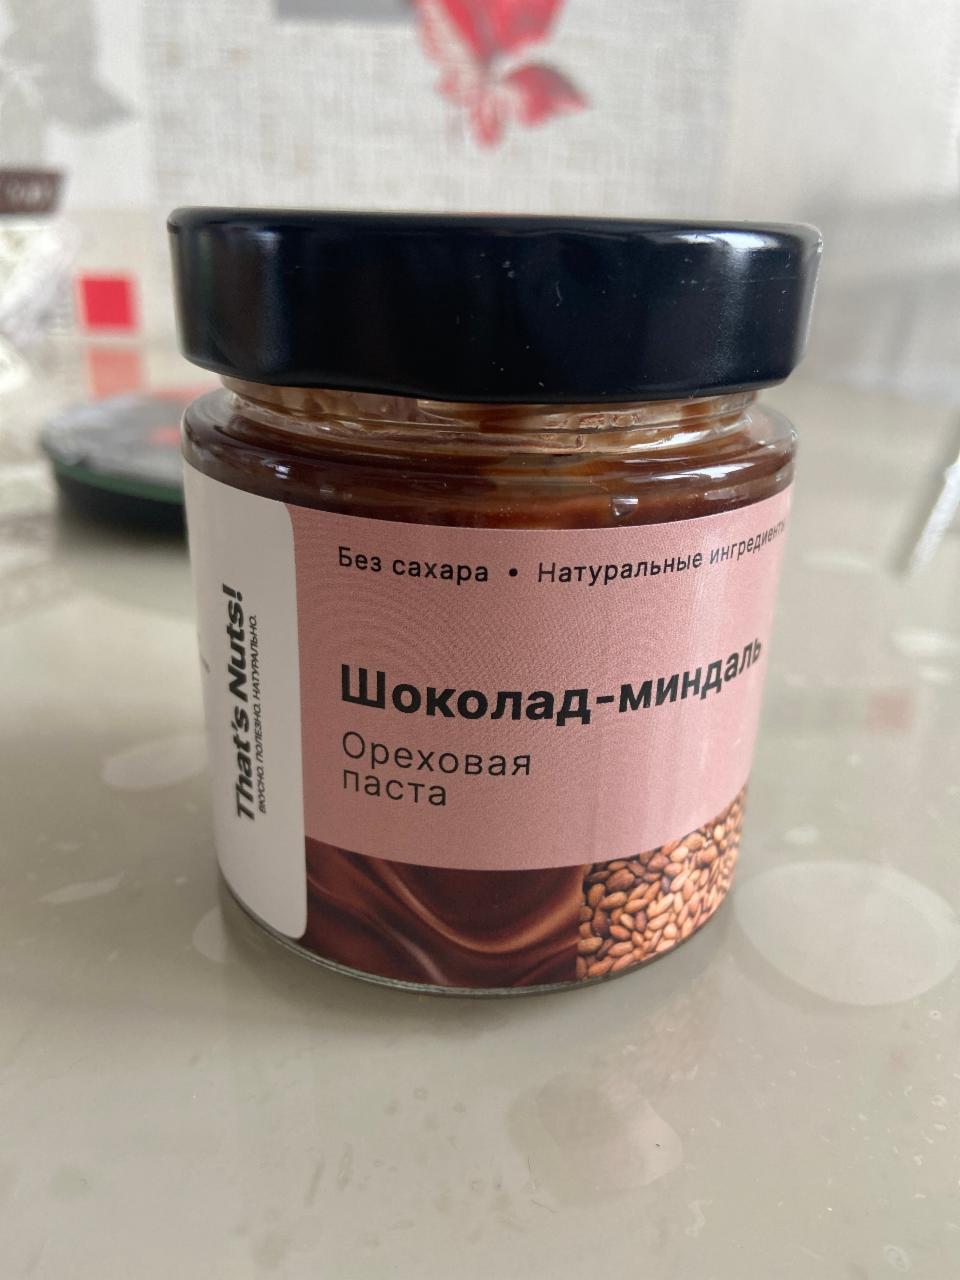 Фото - Ореховая паста шоколад-миндаль That’s Nuts